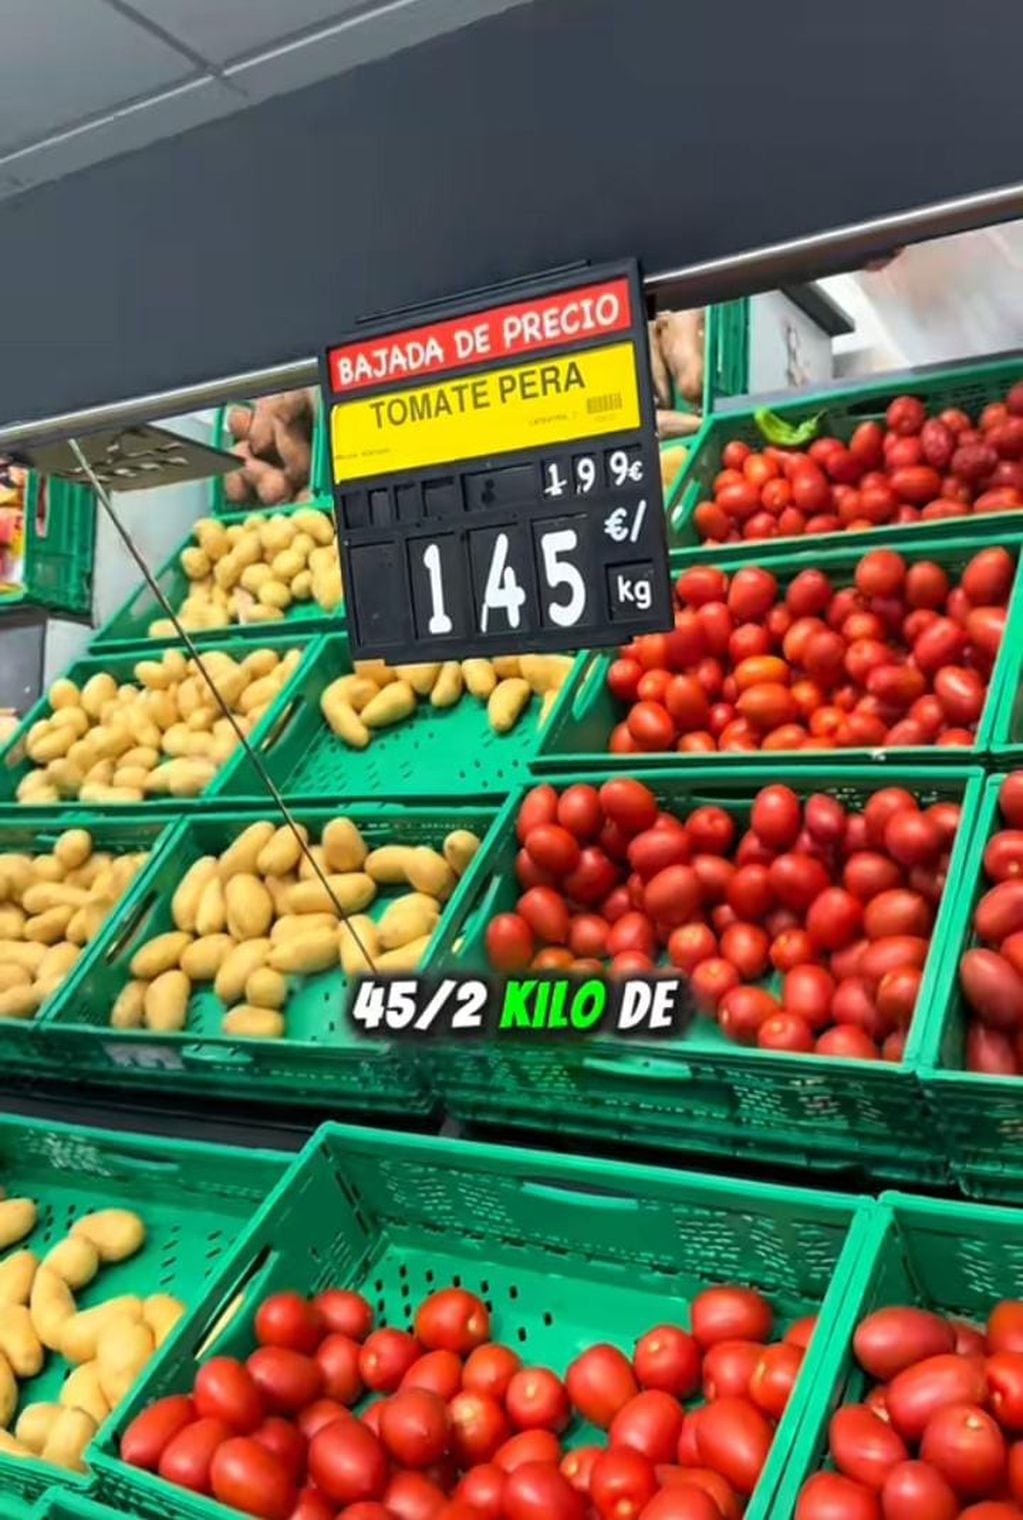 Un argentino fue al supermercado y mostró todo lo que compró.